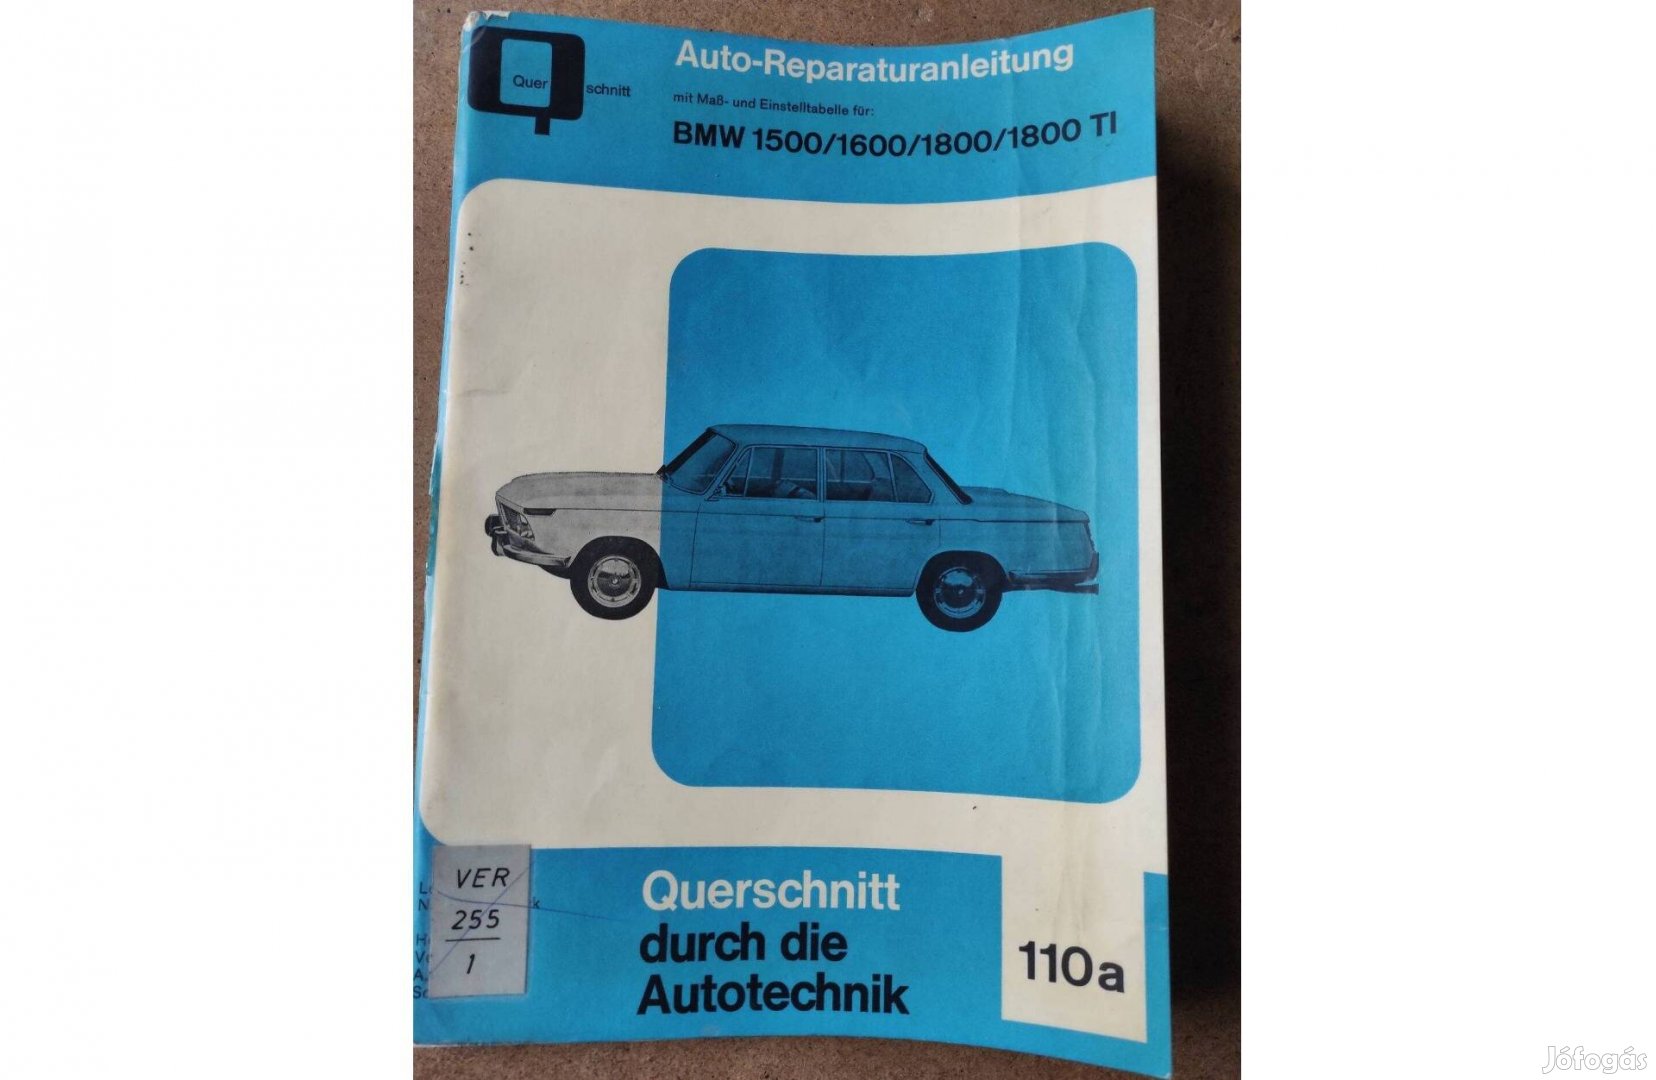 BMW 1500/1600/1800/1800Ti javítási karbantartási könyv